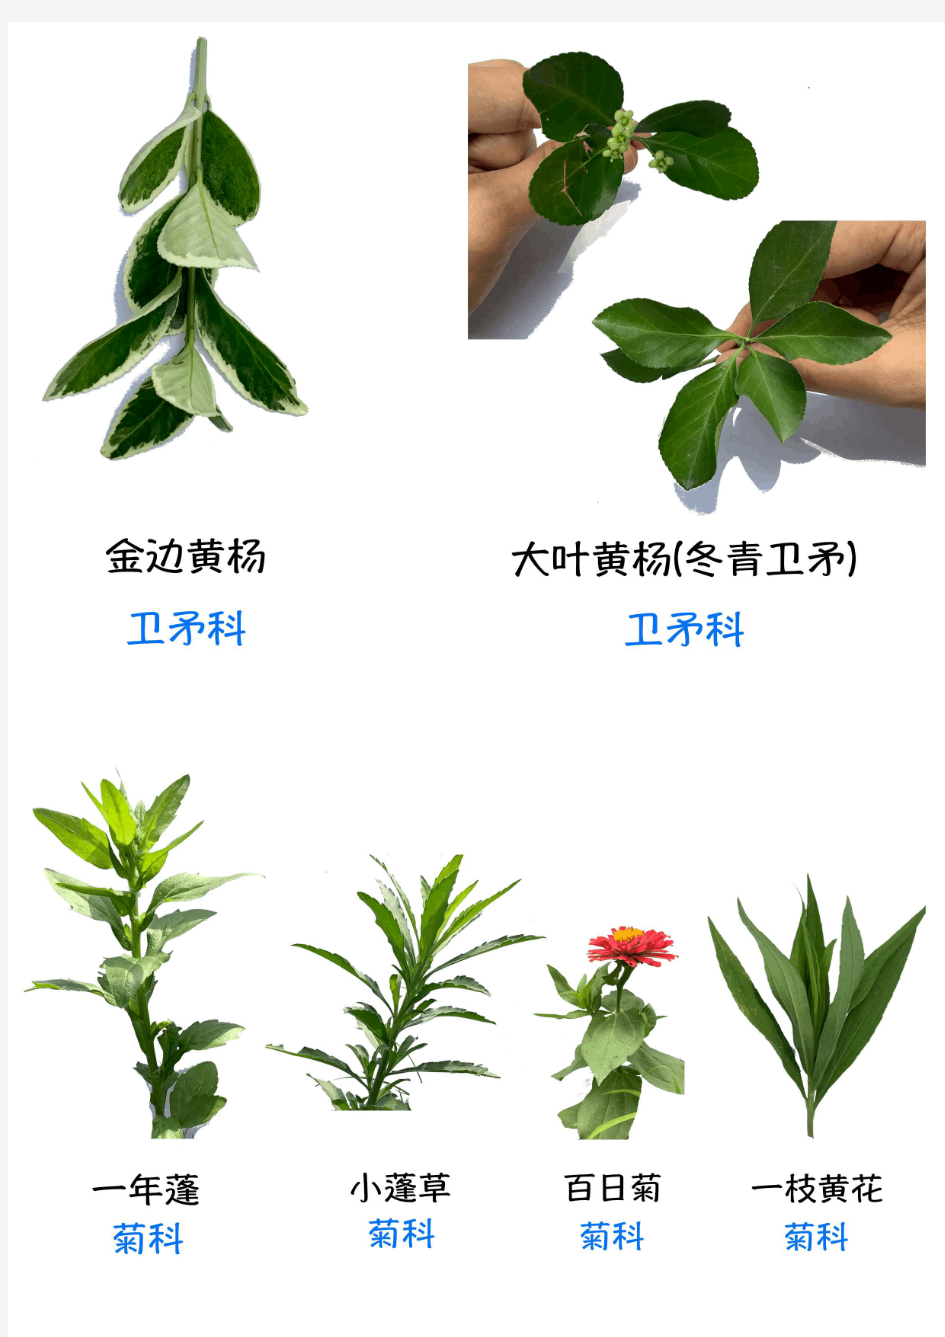 常见植物品种及科名识别汇总